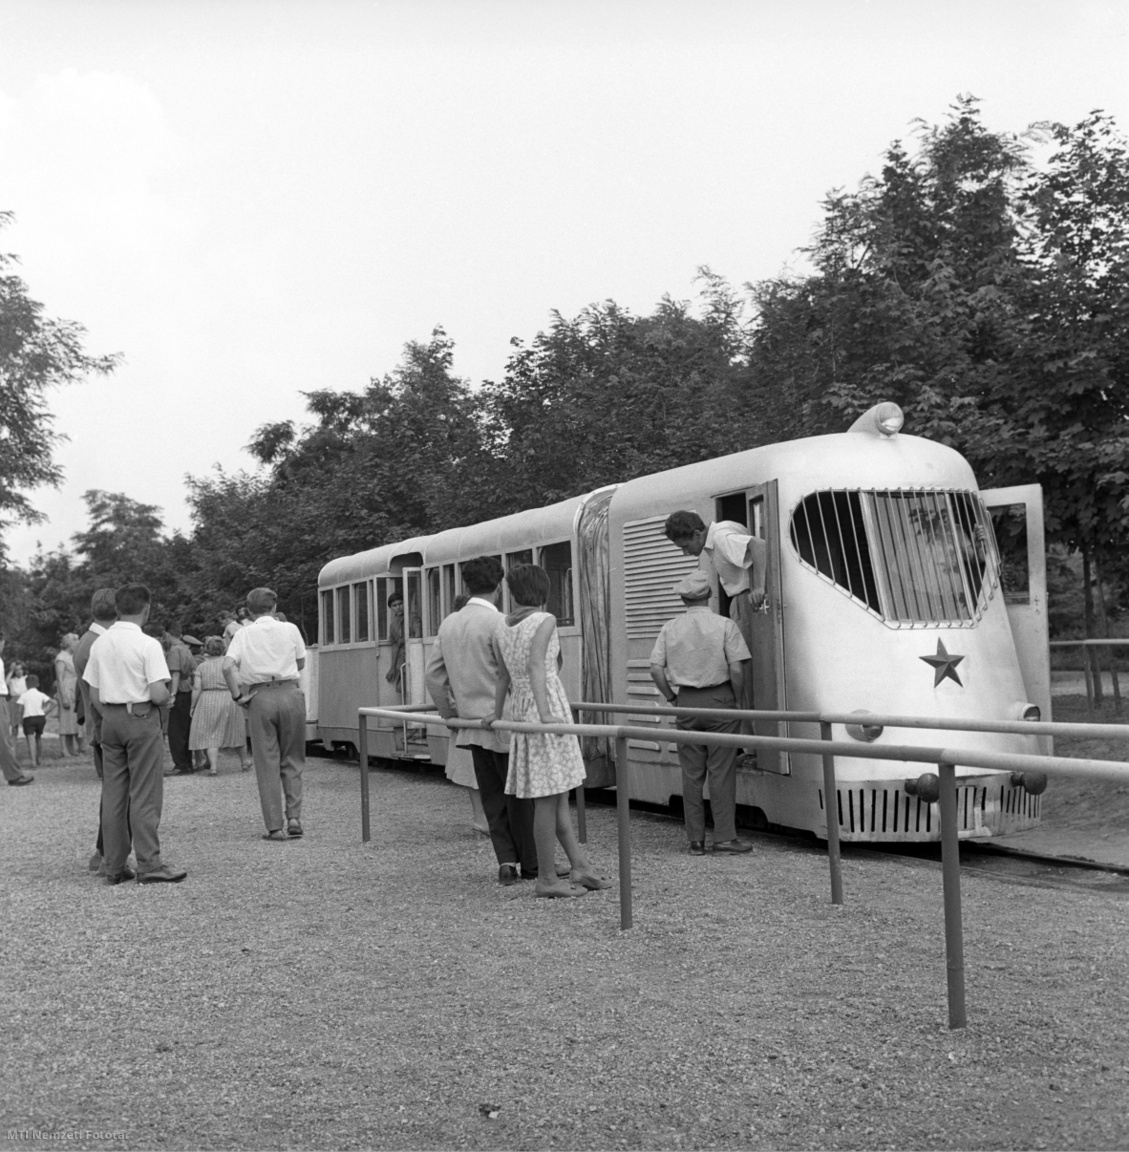 Sztálinváros, 1961. július 2. Utasok szállnak le és fel a villamosra az egyik megállóban.